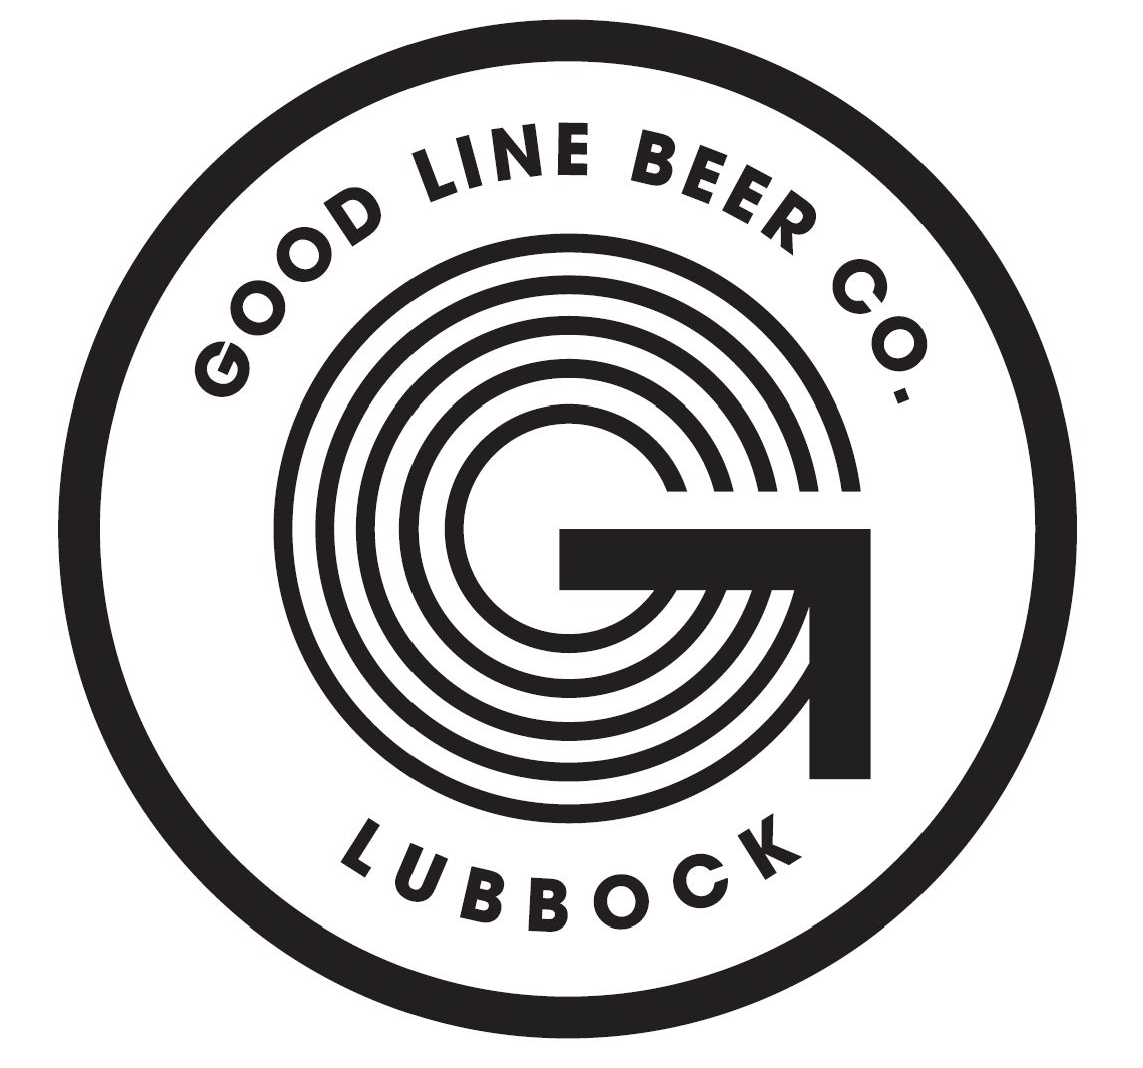 Good Line Beer logo